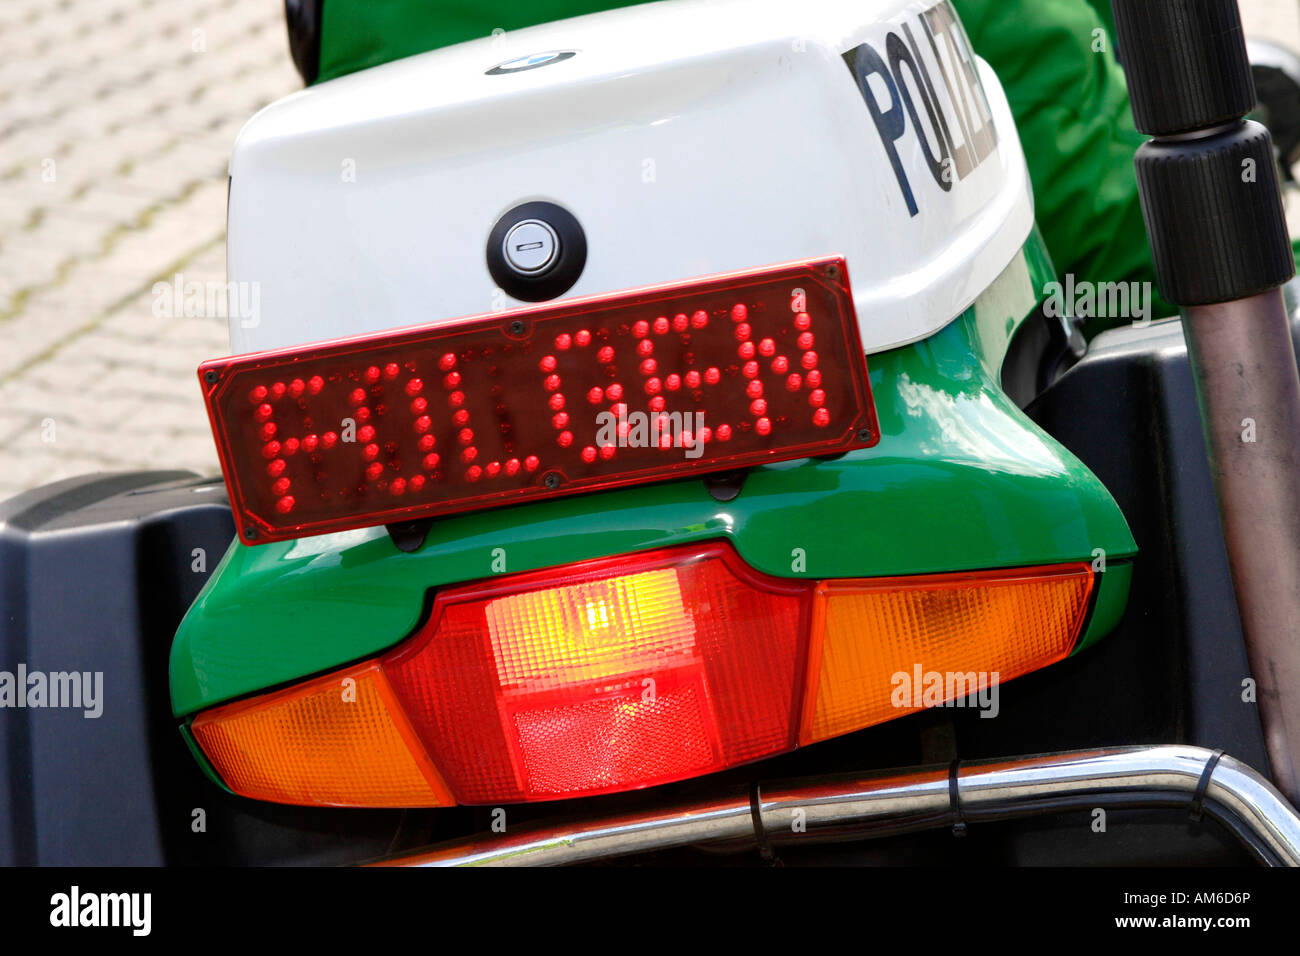 Polizeimotorrad mit Schild "Folgen" (folgen) Stockfoto